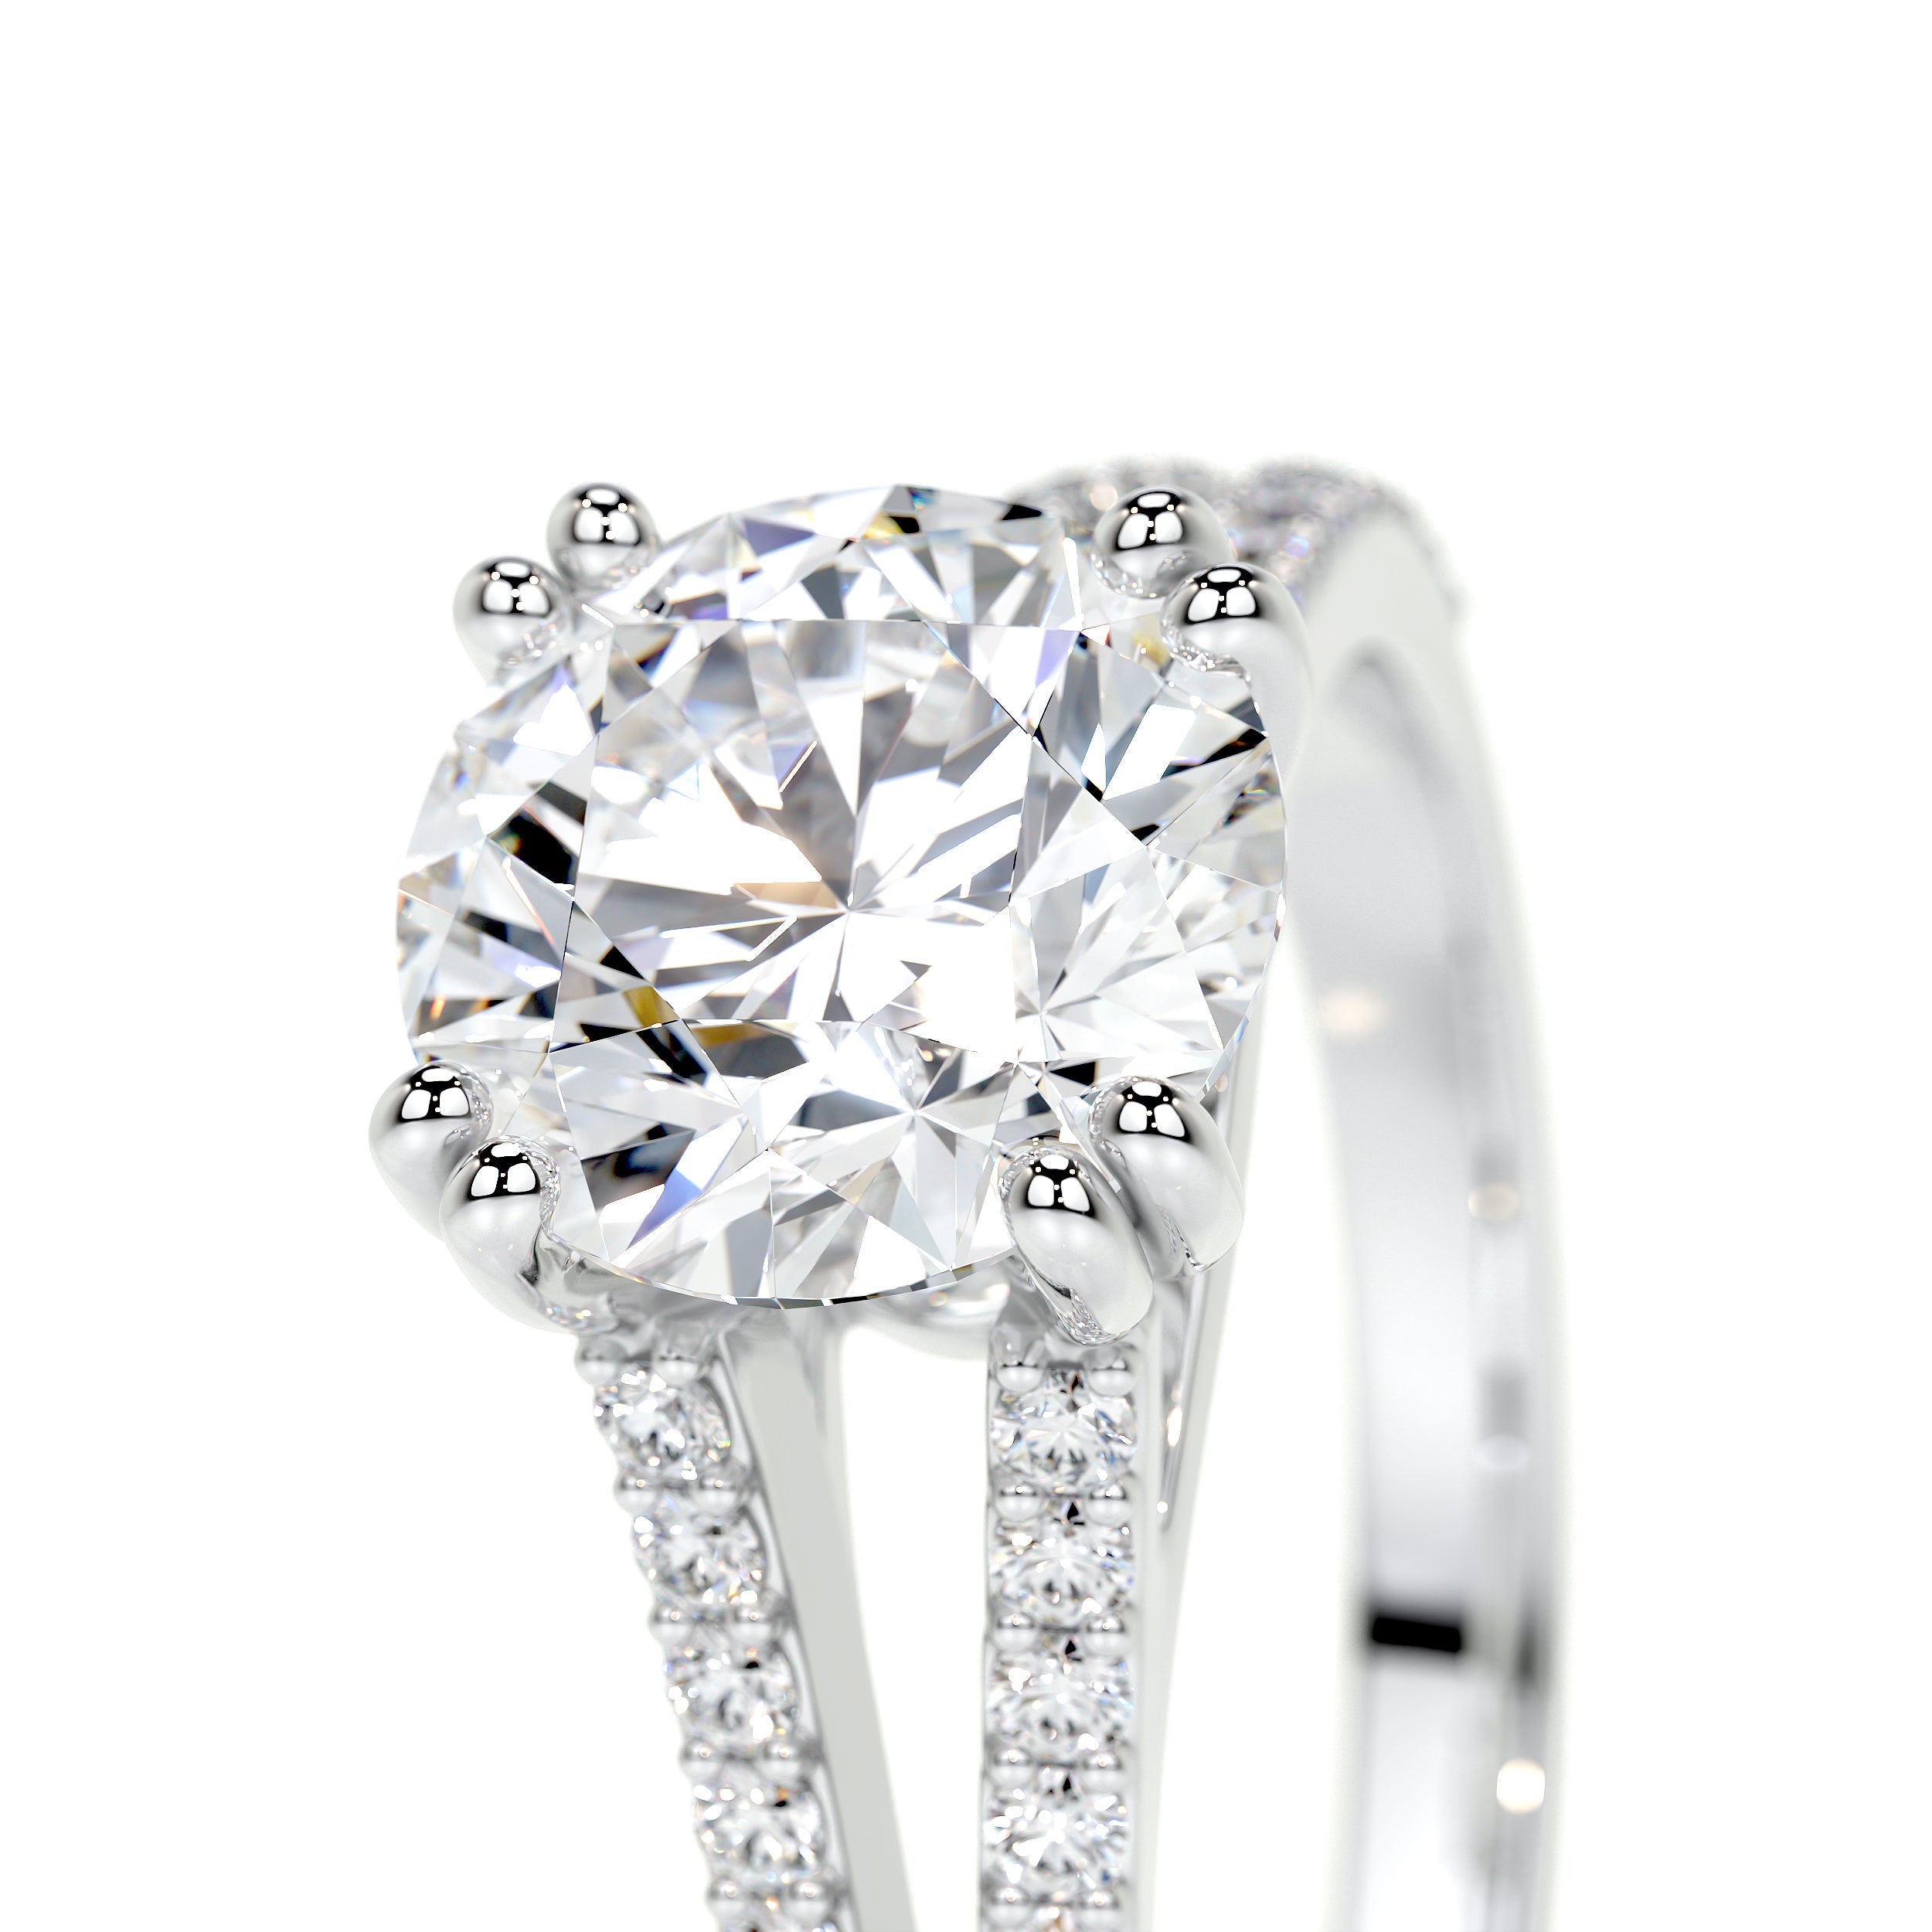 Evelyn Lab Grown Diamond Ring   (2 Carat) -14K White Gold